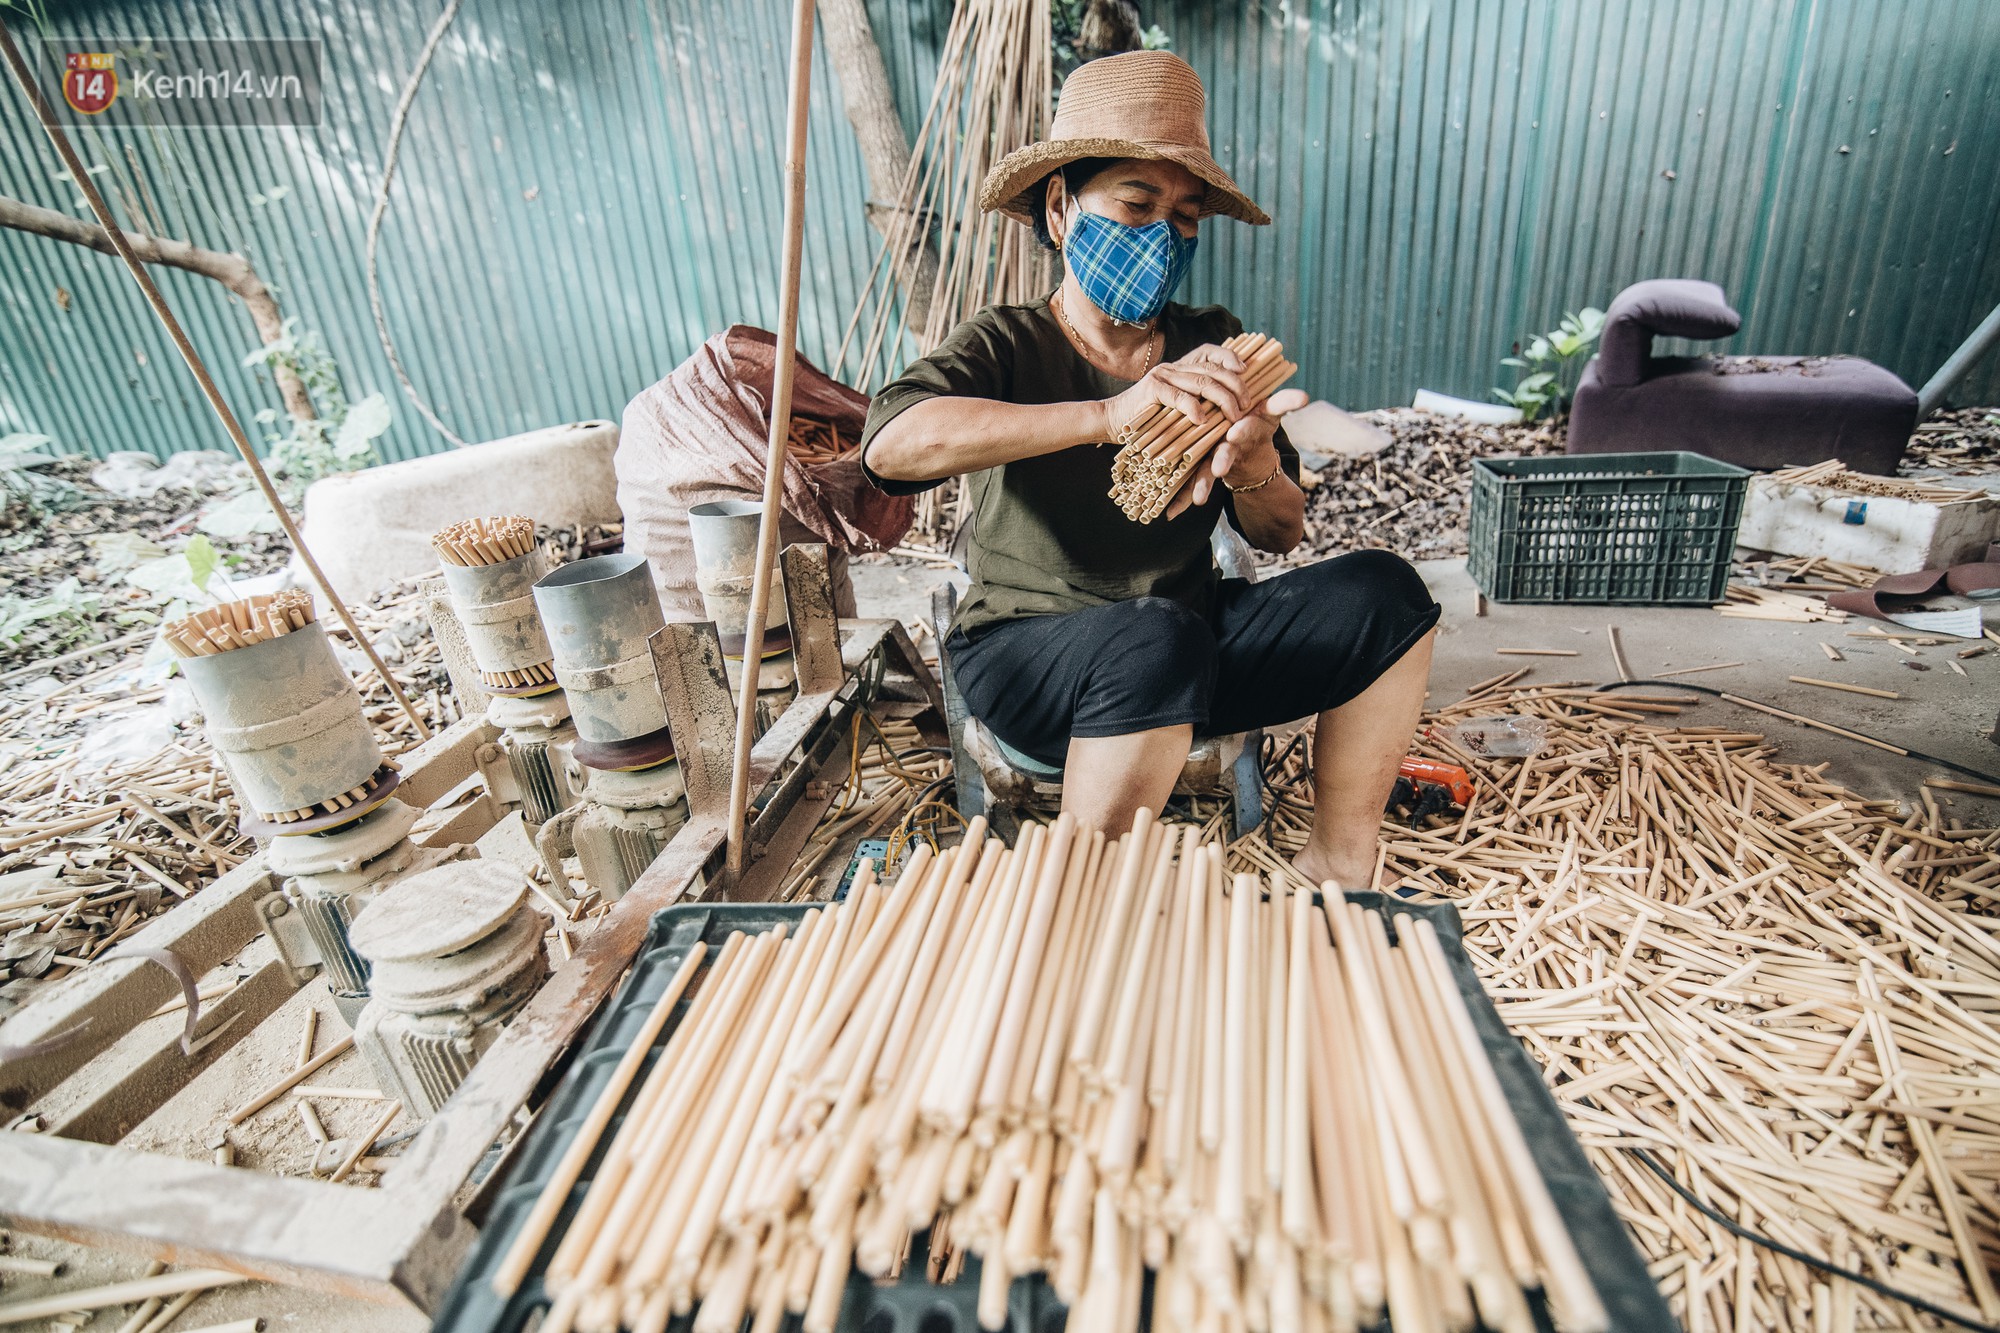 Câu chuyện thú vị về chàng trai đưa ống hút tre Việt Nam ra thế giới: Thu gần 10 tỷ đồng/tháng, 12 năm miệt mài thi ĐH vì đam mê - Ảnh 7.